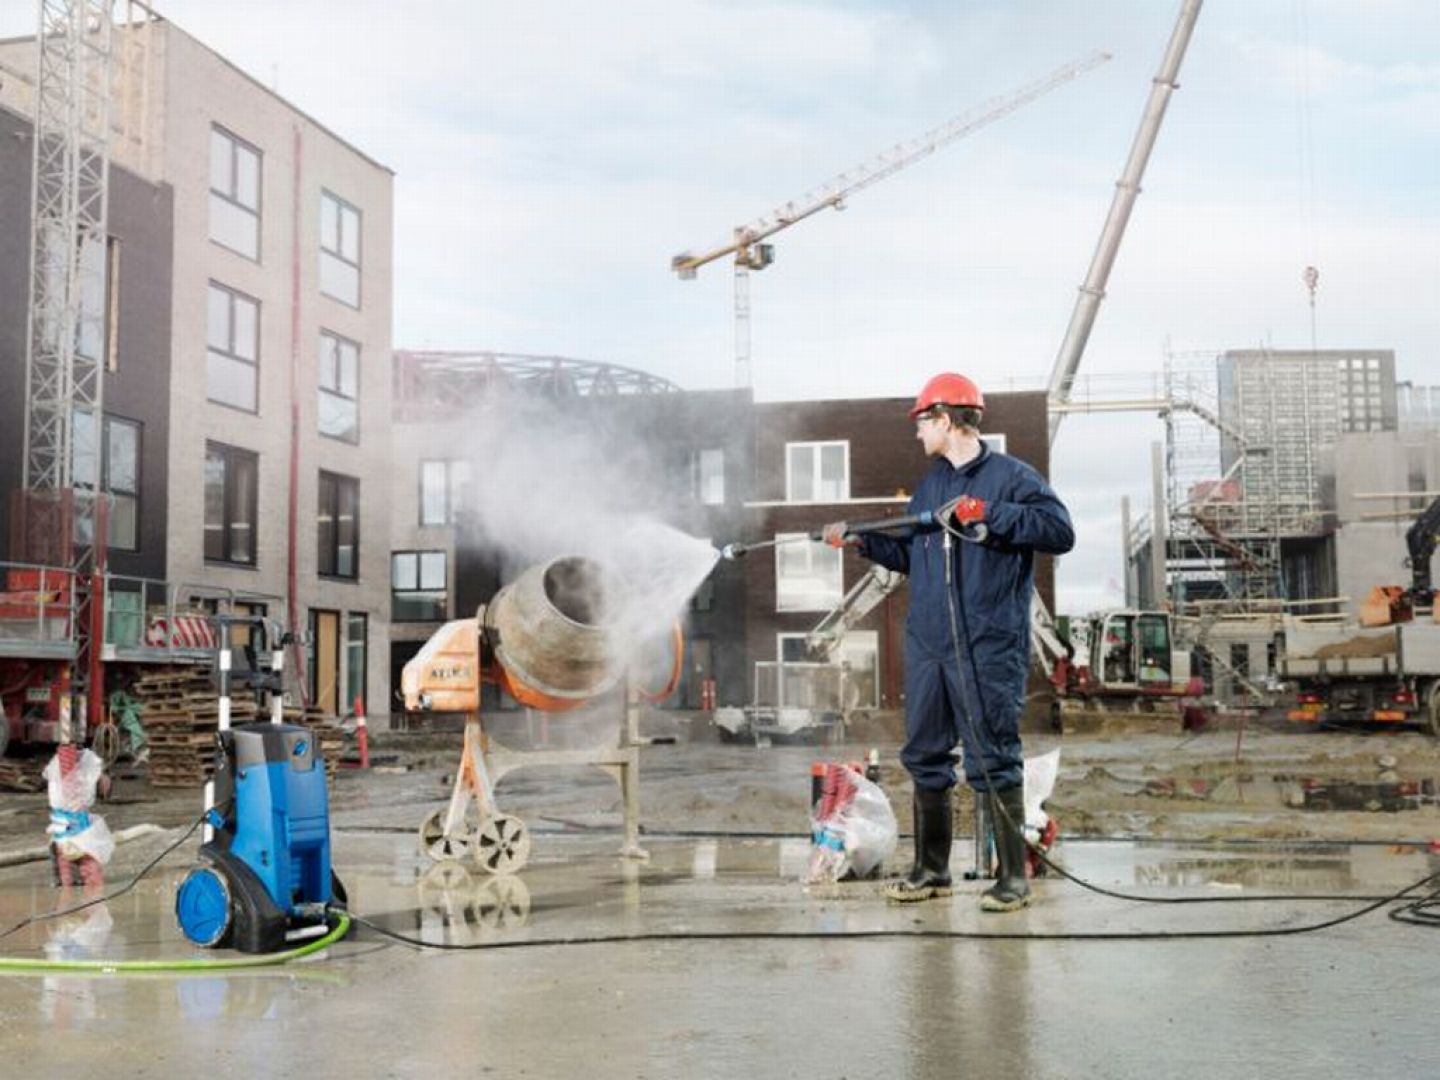 W przypadku placu budowy, gorącowodne myjki ciśnieniowe mogą się przydać także do czyszczenia narzędzi pracy, np. betoniarek. Fot. Nilfisk